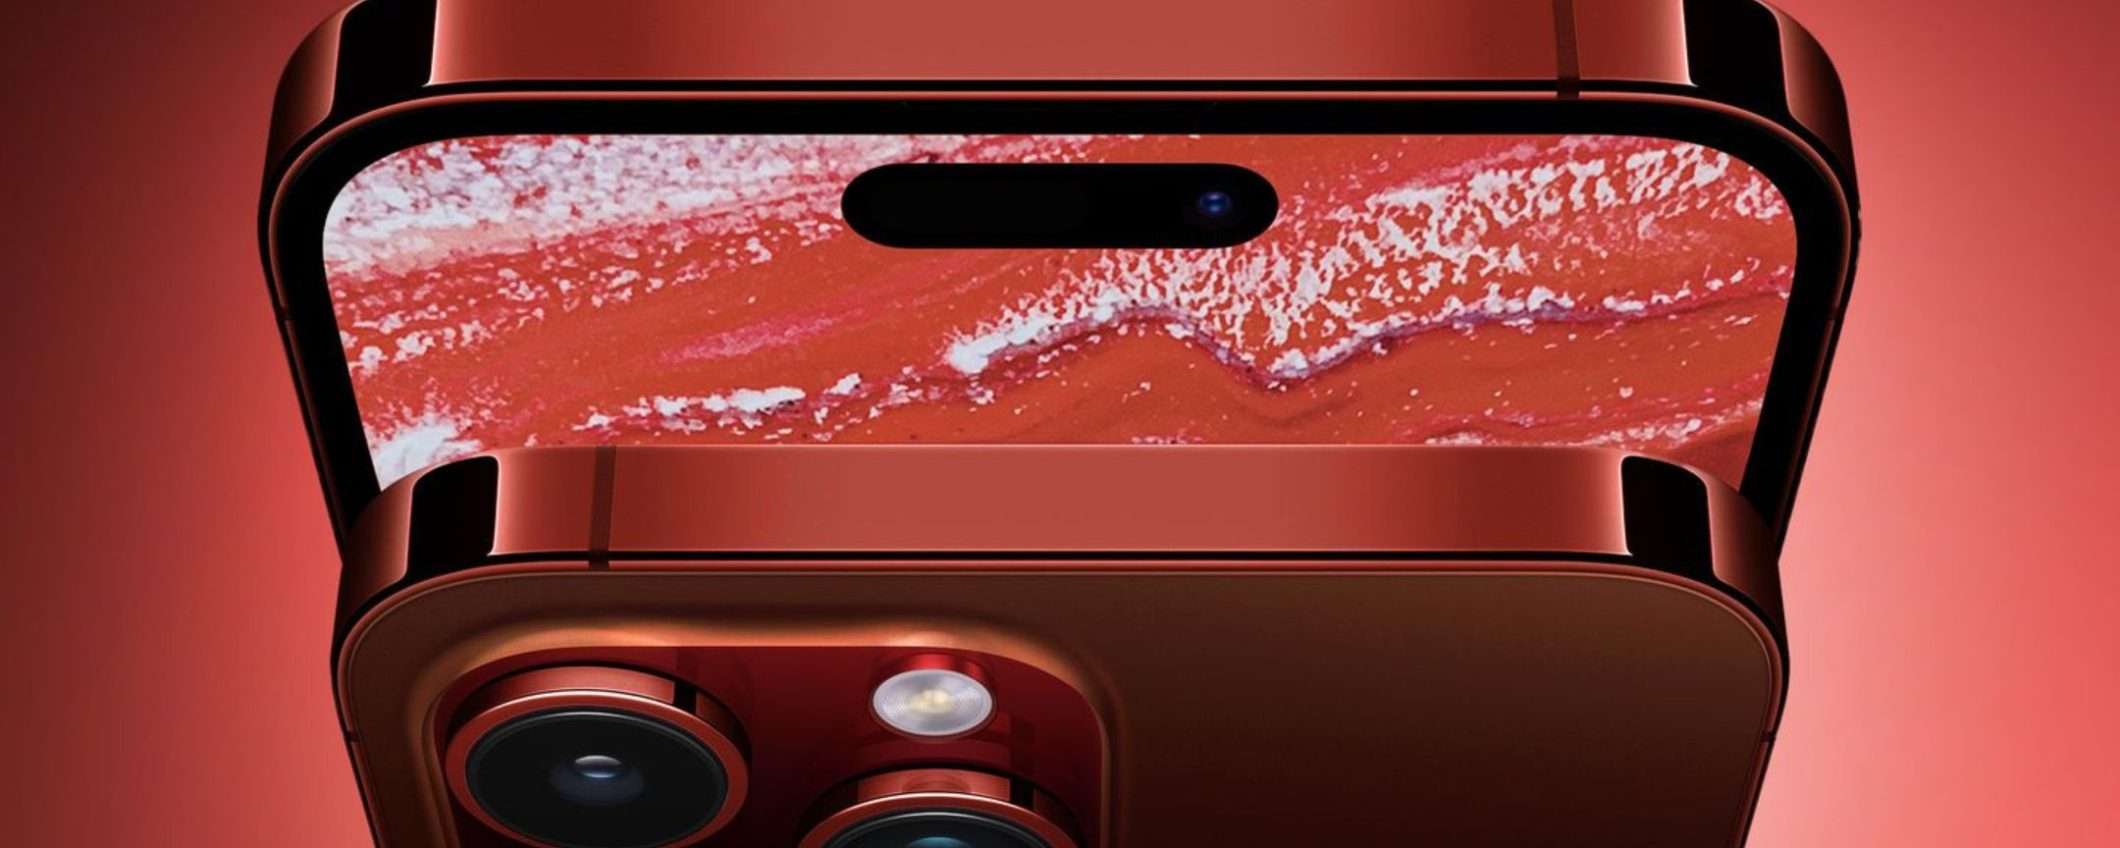 iPhone 15 Pro Max: le fotocamere non saranno rivoluzionarie